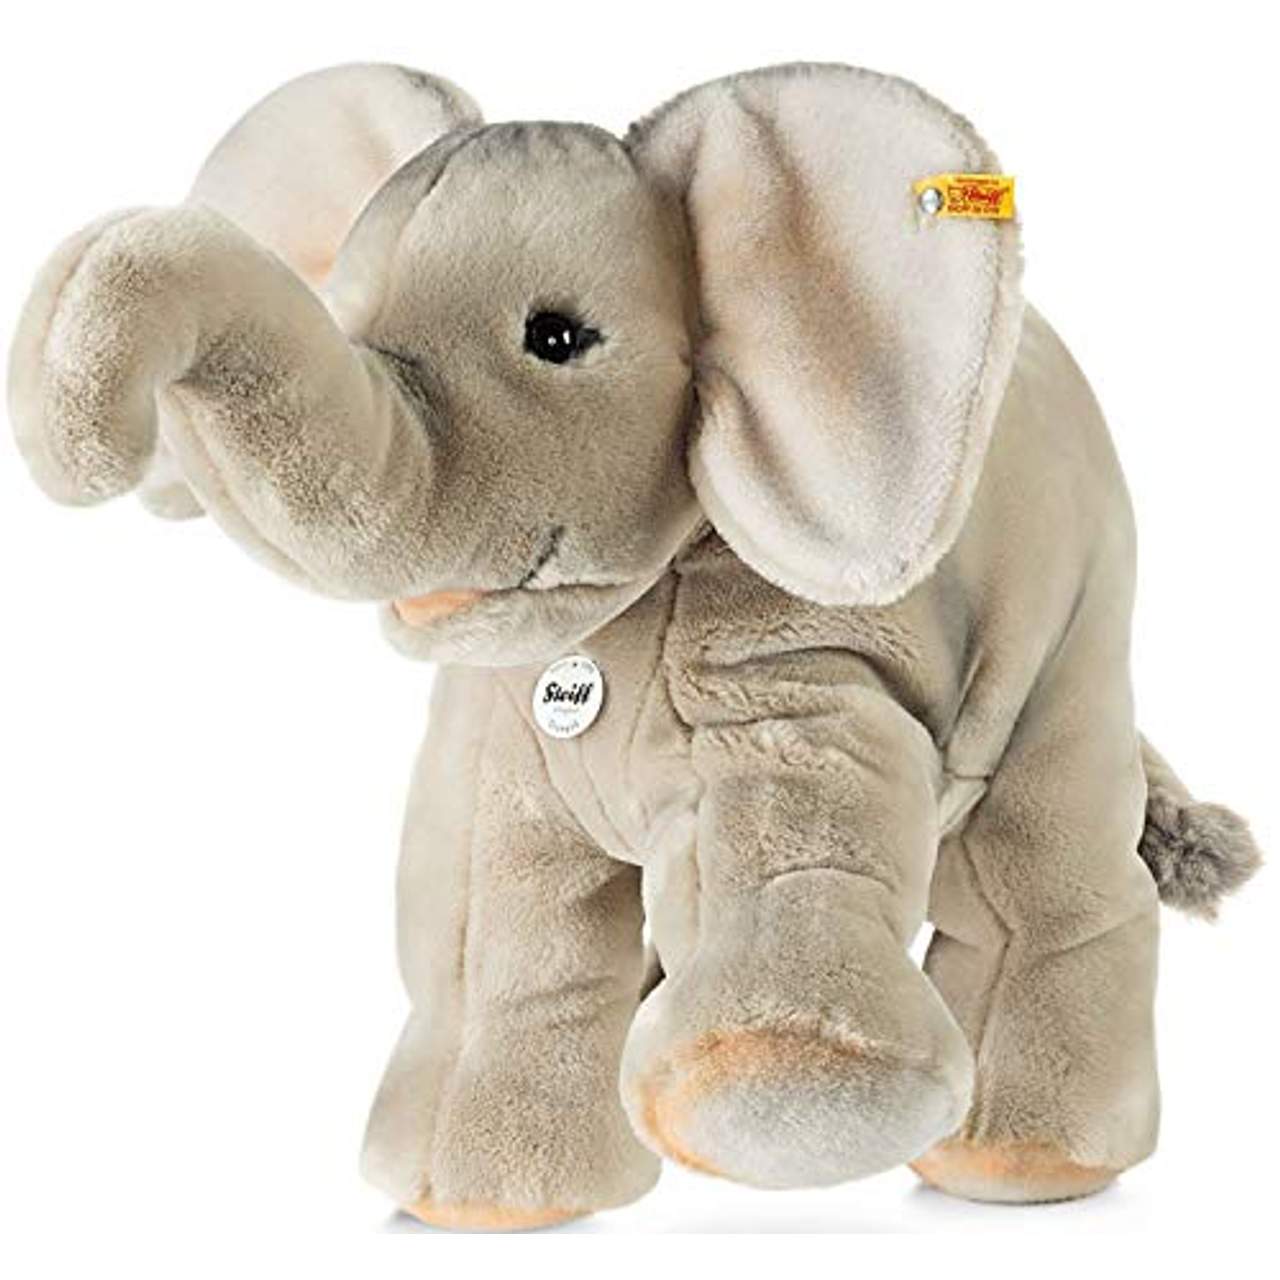 Steiff 064043 Trampili Elefant